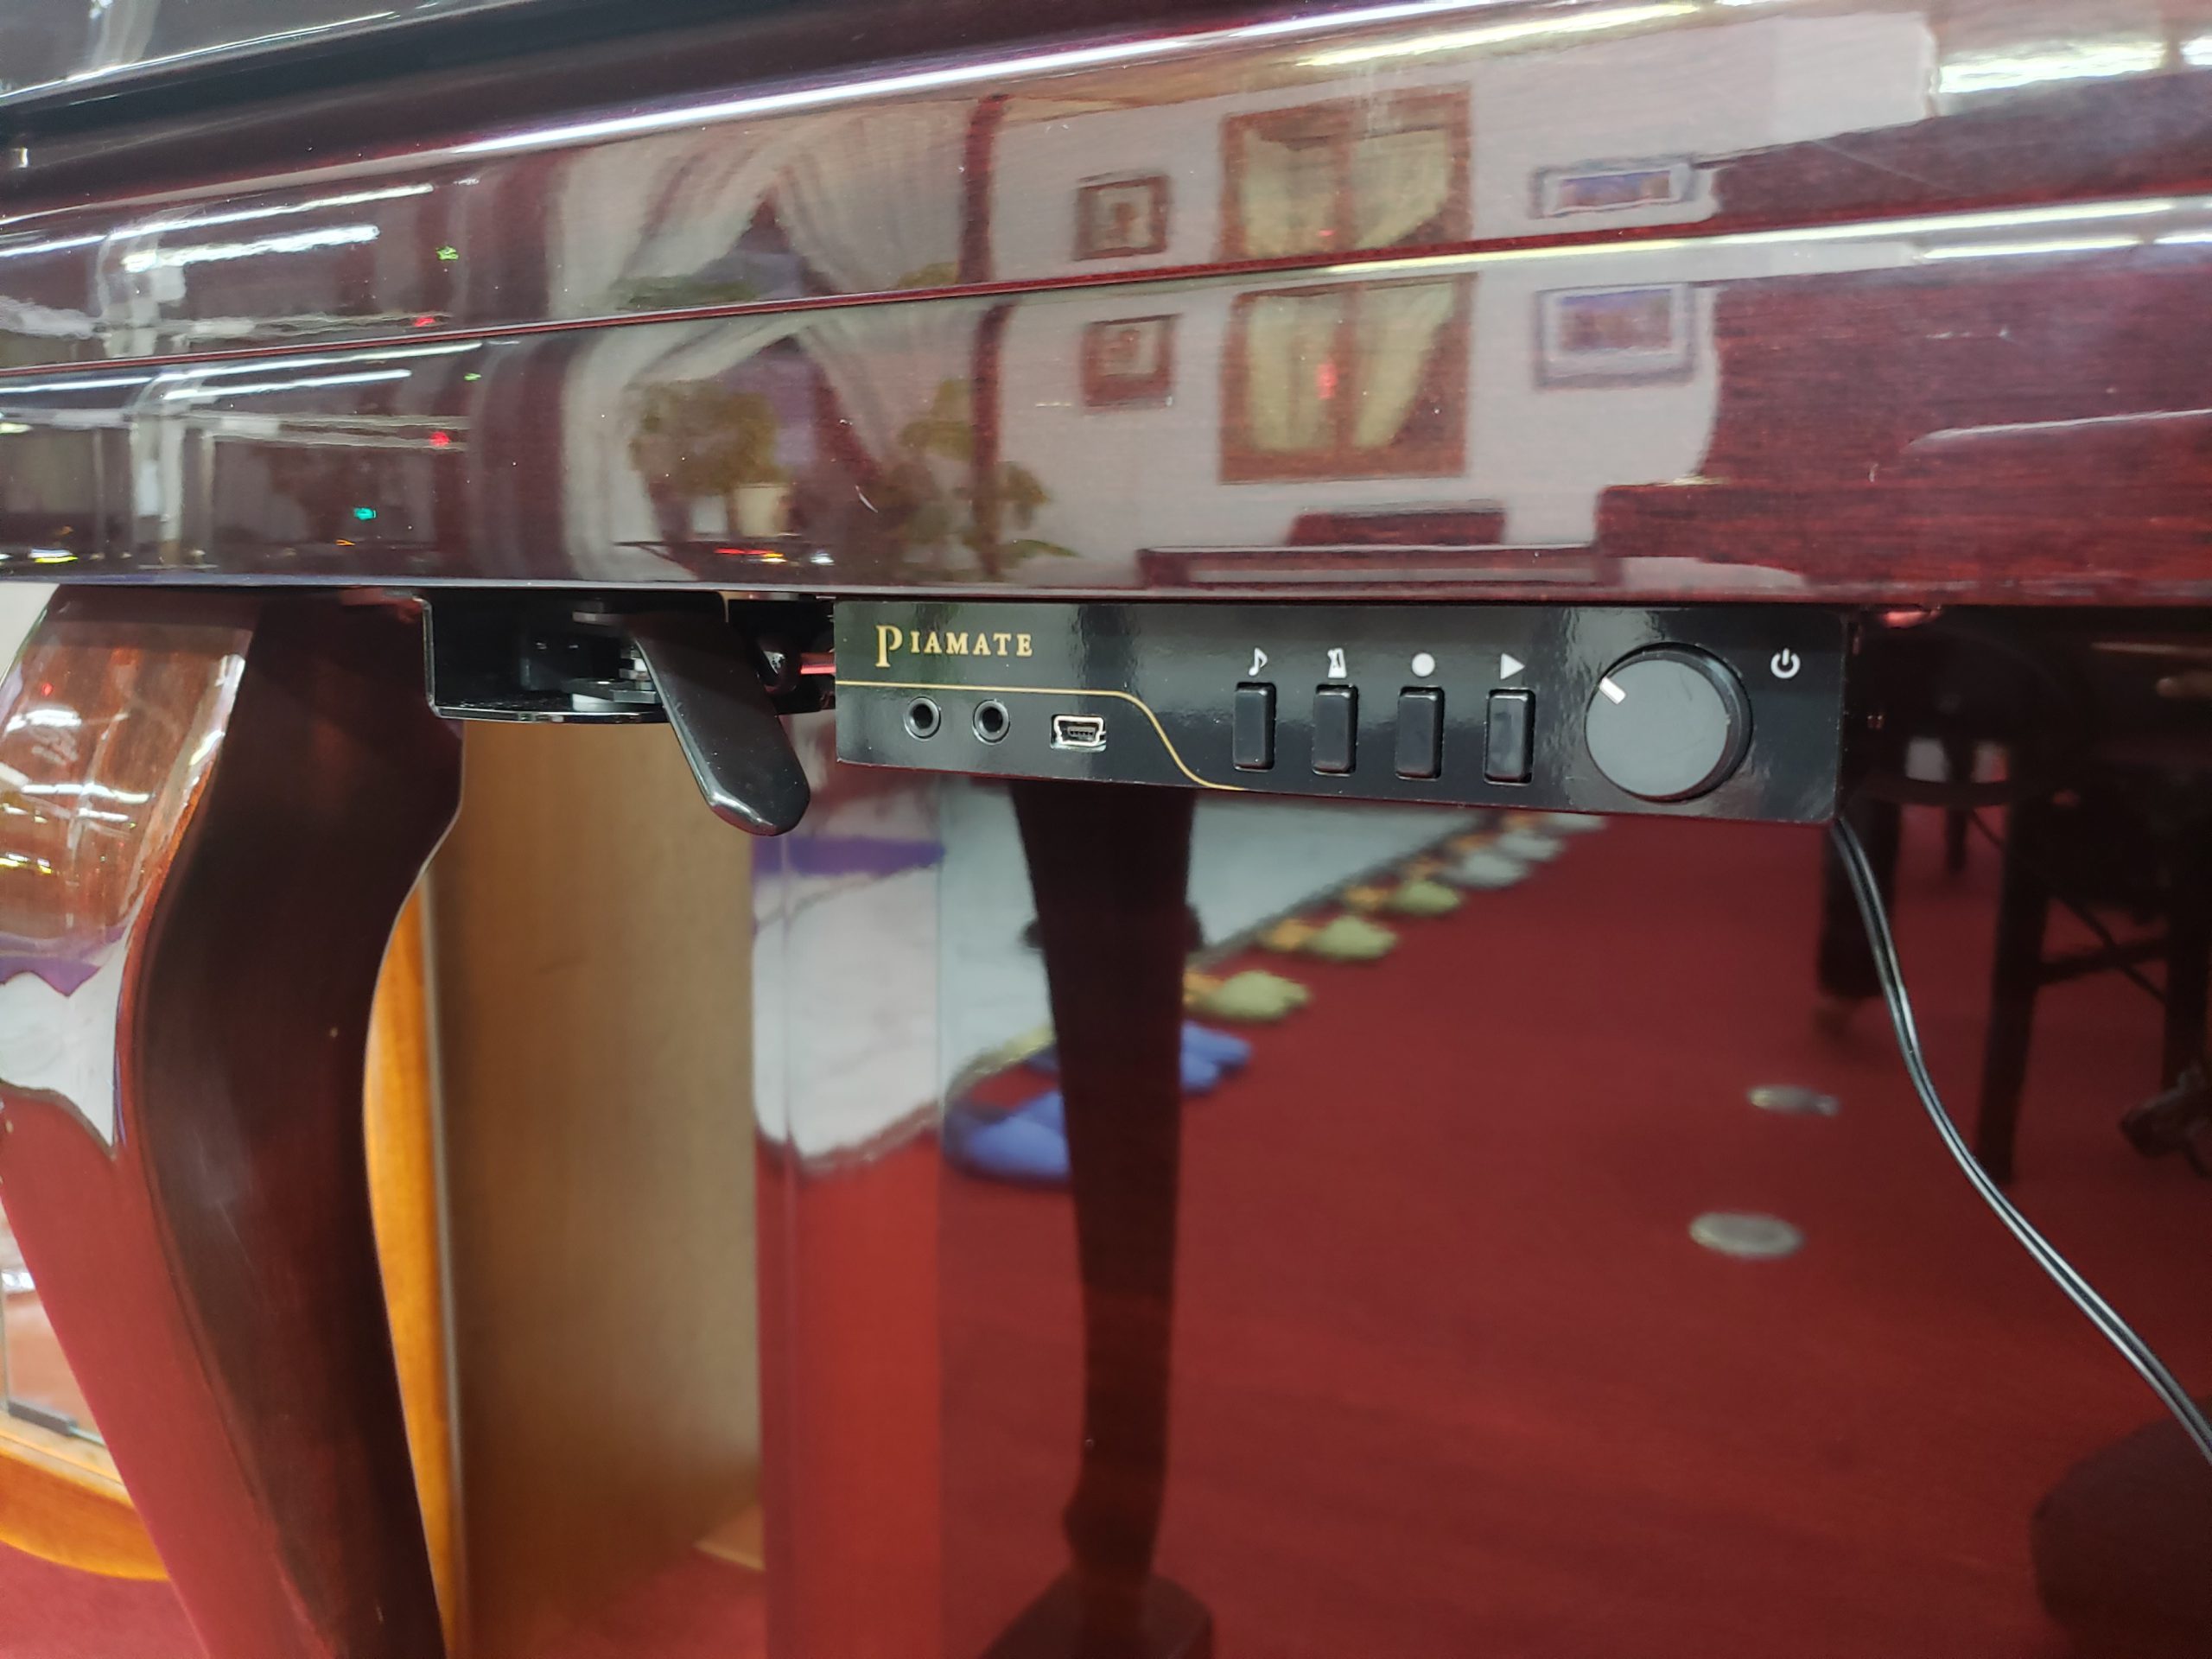 サイレント付き中古アップライトピアノ WEINBURG WE-121DM(新品サイレント付)